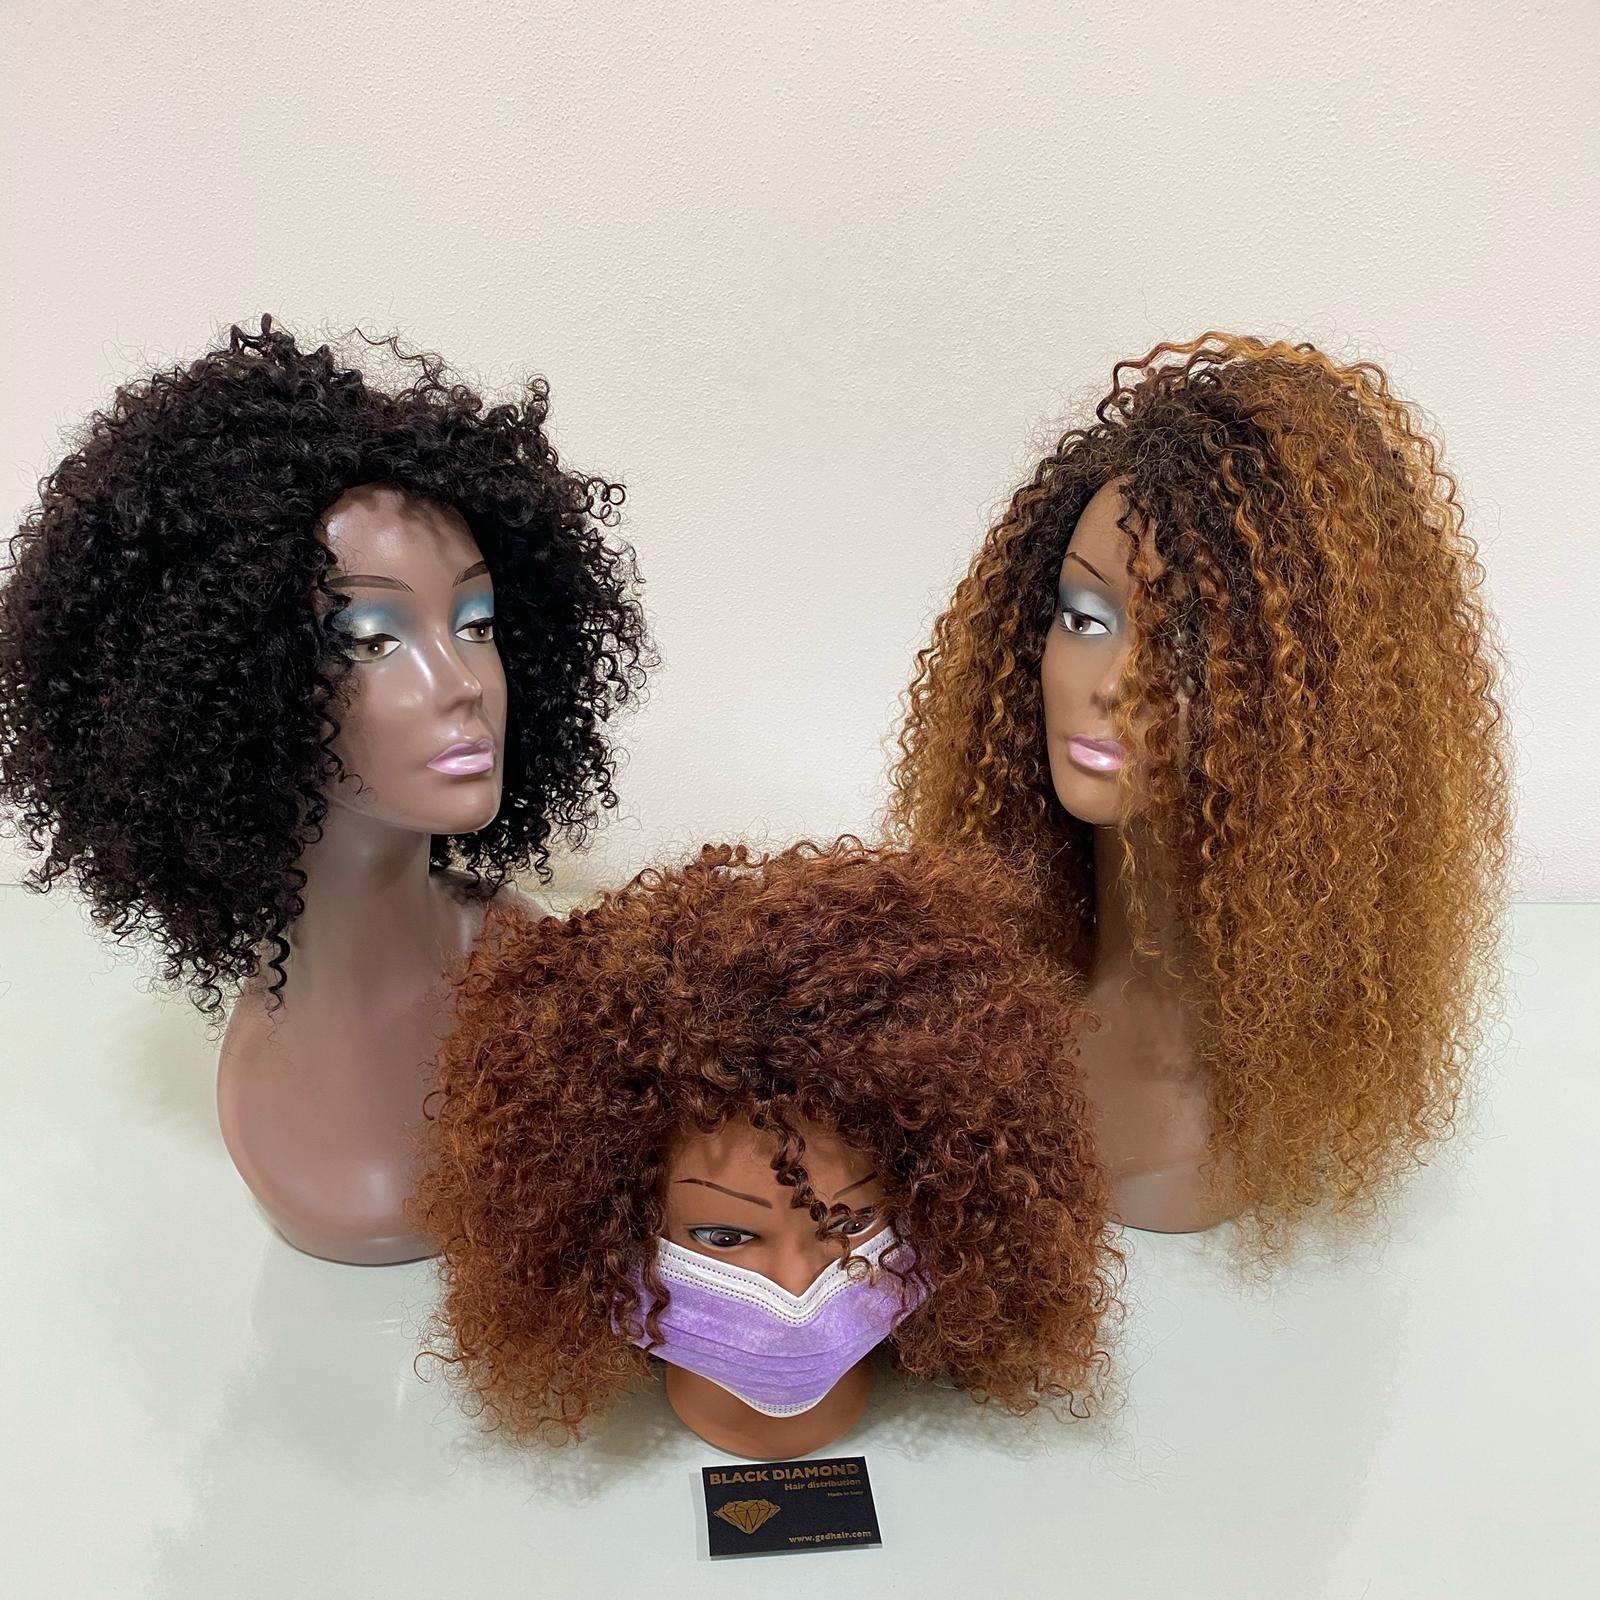 perruque afro vierge de couleur  Black diamond hair distribution